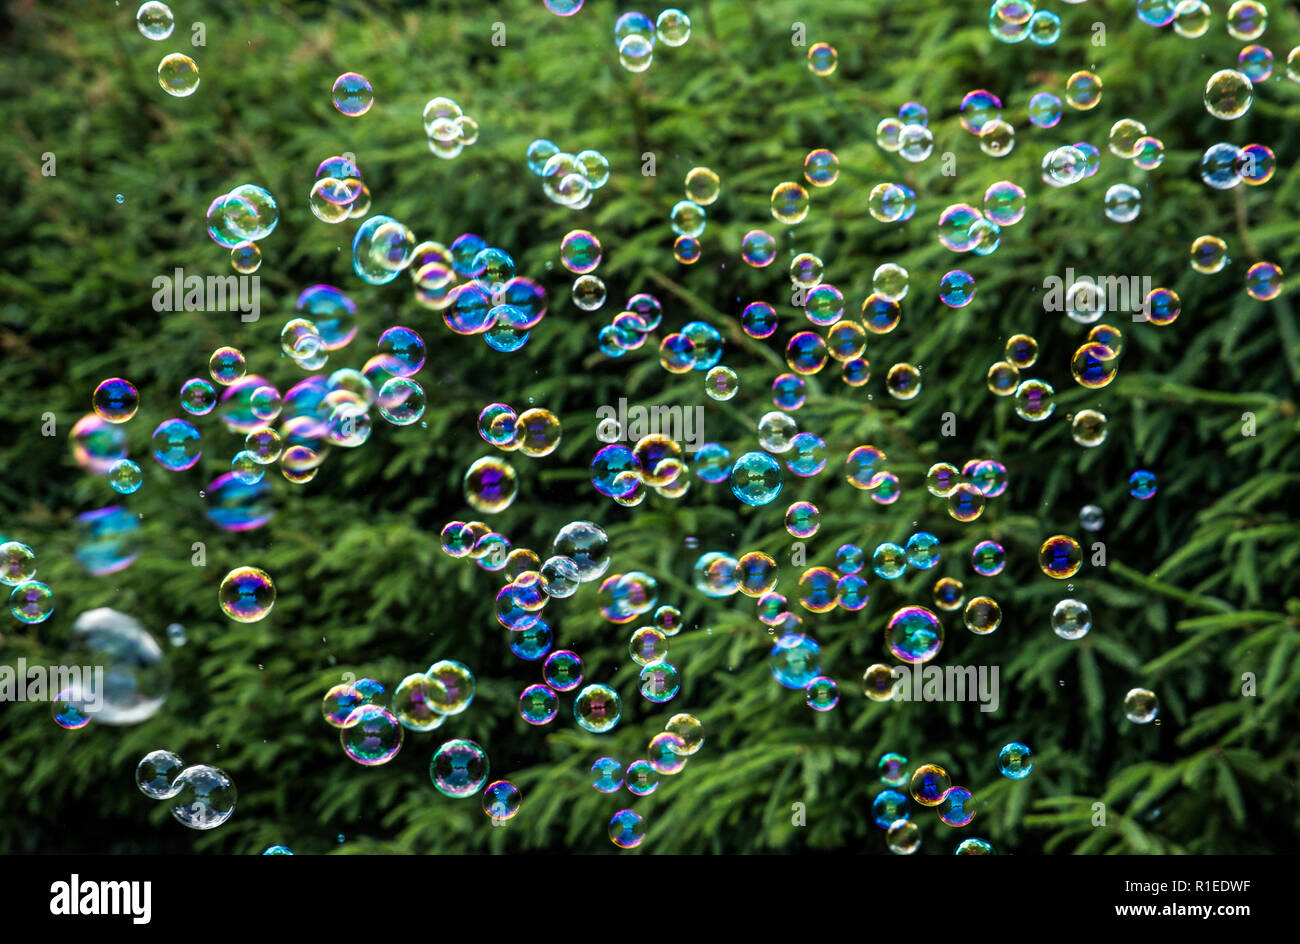 Viele bunte kleine Seifenblasen fliegen im Freien, grünen Bäumen Hintergrund. Stockfoto